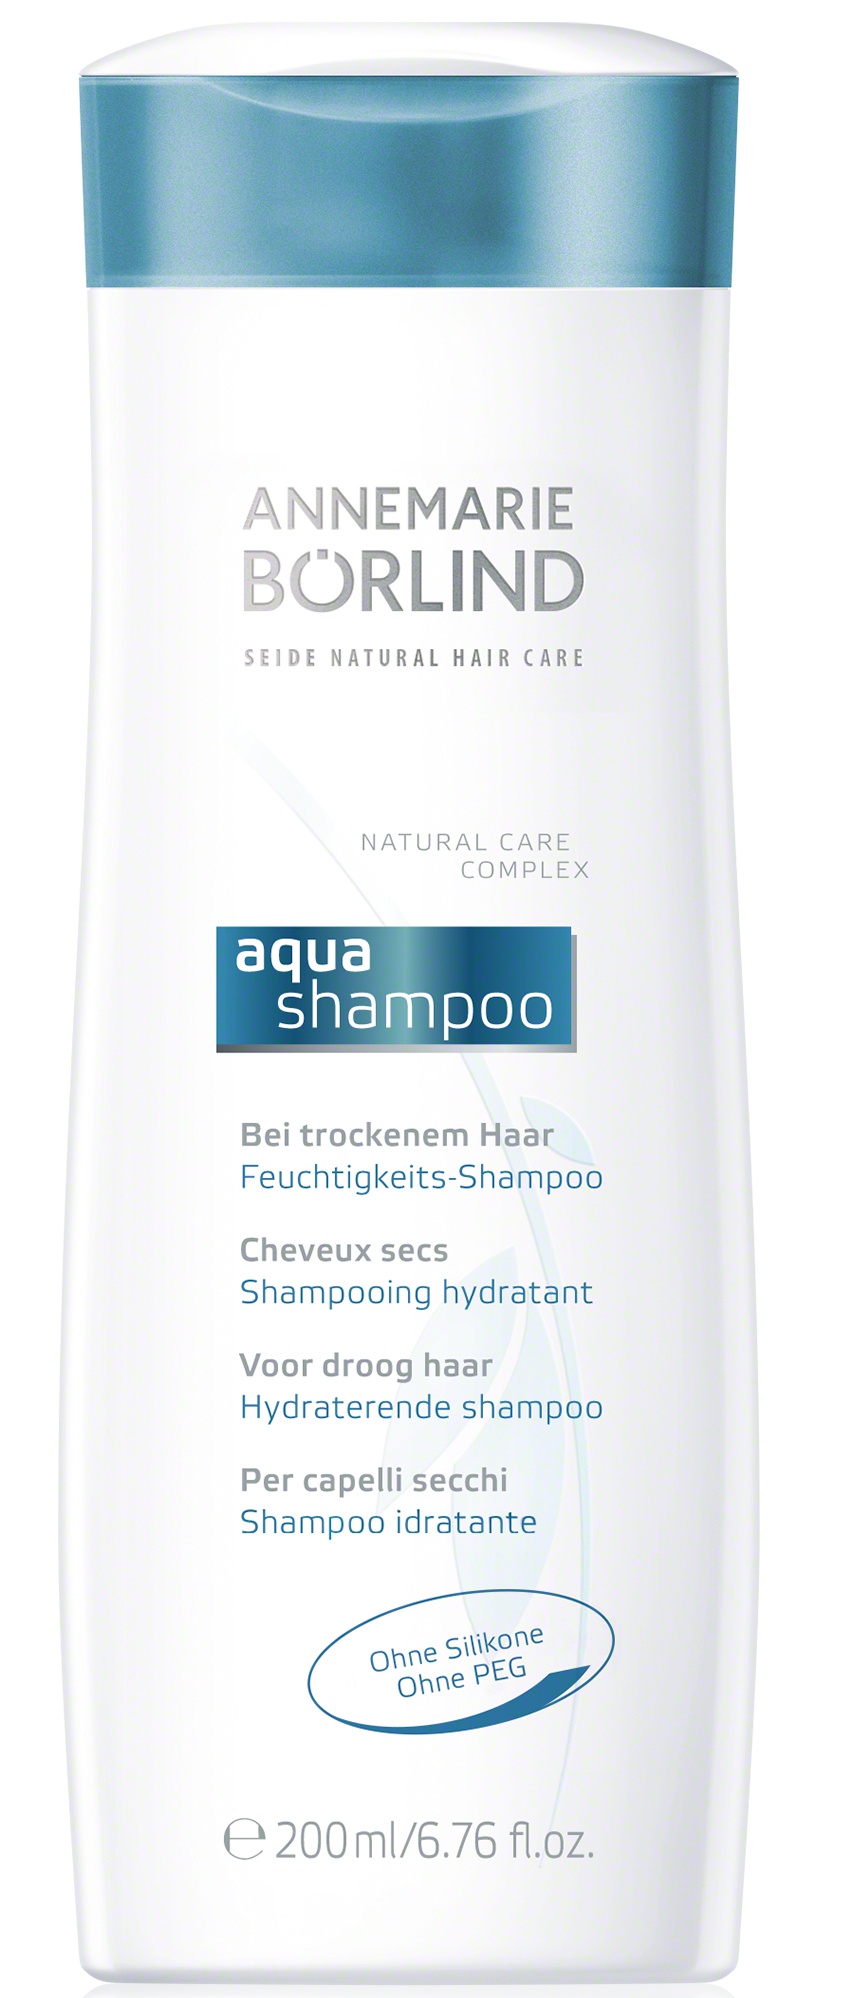 Annemarie Börlind Seide Natural Hair Care Aqua Shampoo